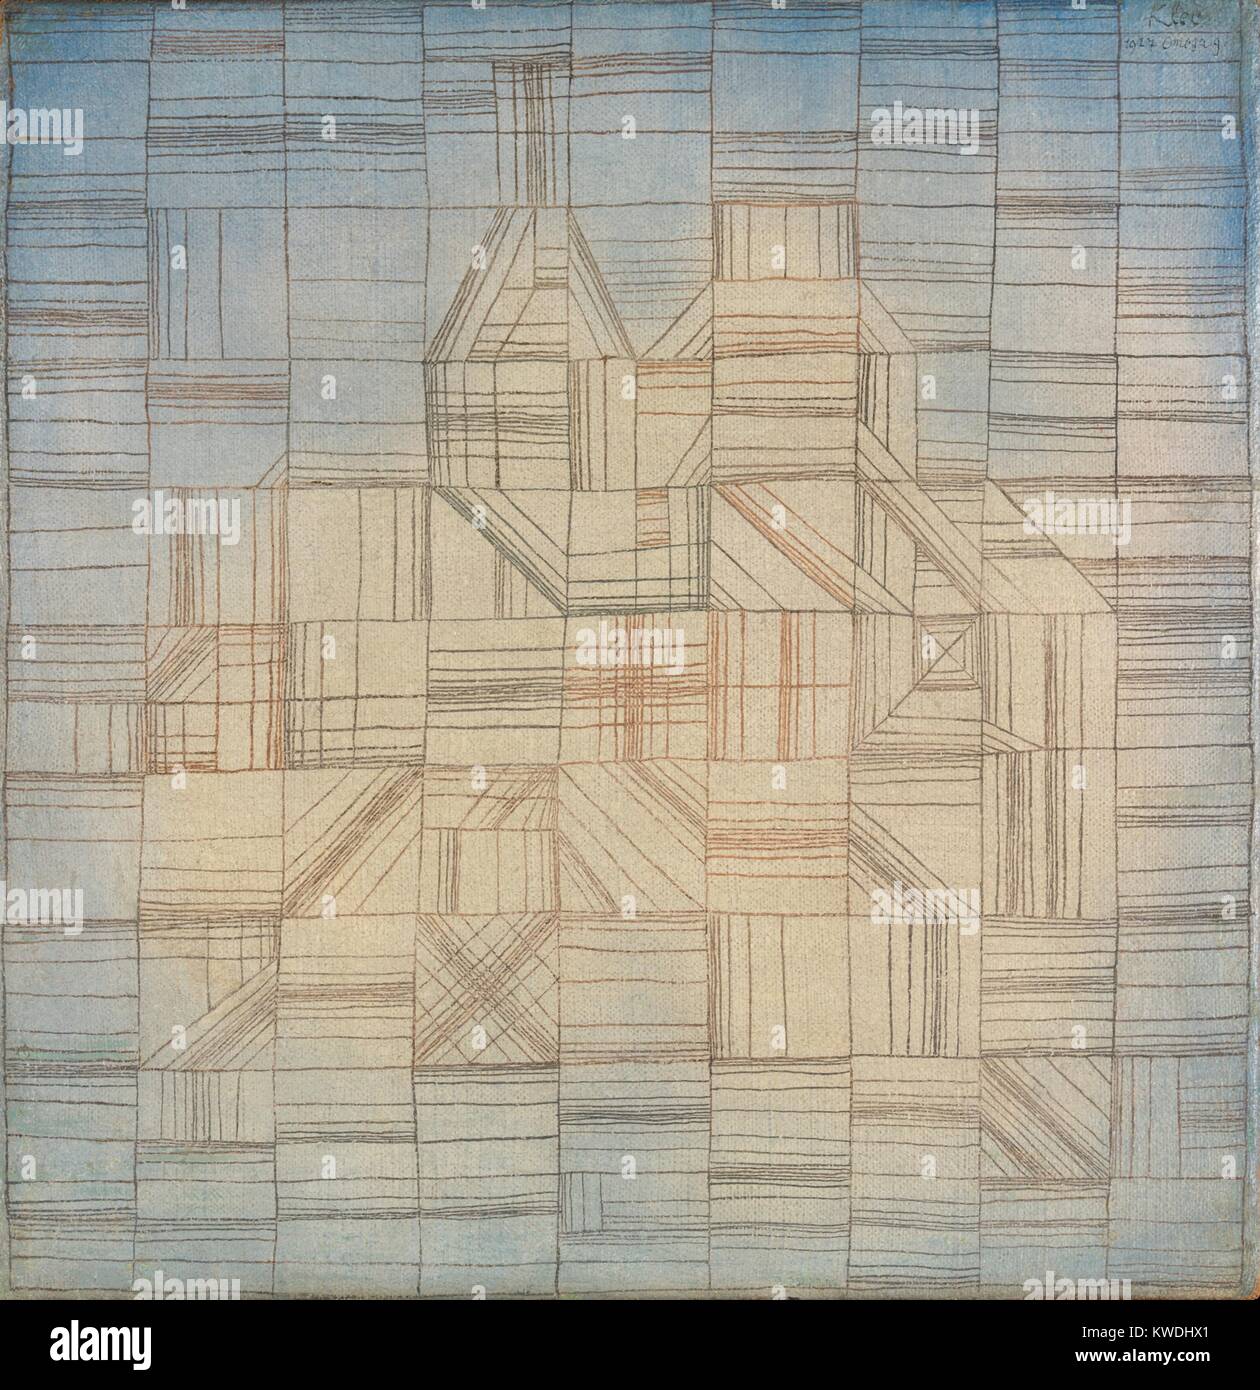 VARIATIONS (ROGRESSIVE MOTIF), de Paul Klee, 1926, la peinture, huile, aquarelle sur toile. La surface de la toile est tonique de l'ivoire au centre et bleu sur les coins et les bords. Au cours de cette activité, créer une grille à la main, dans lequel il a créé diverses combinaisons linéaires (BSLOC 2017 7 66) Banque D'Images